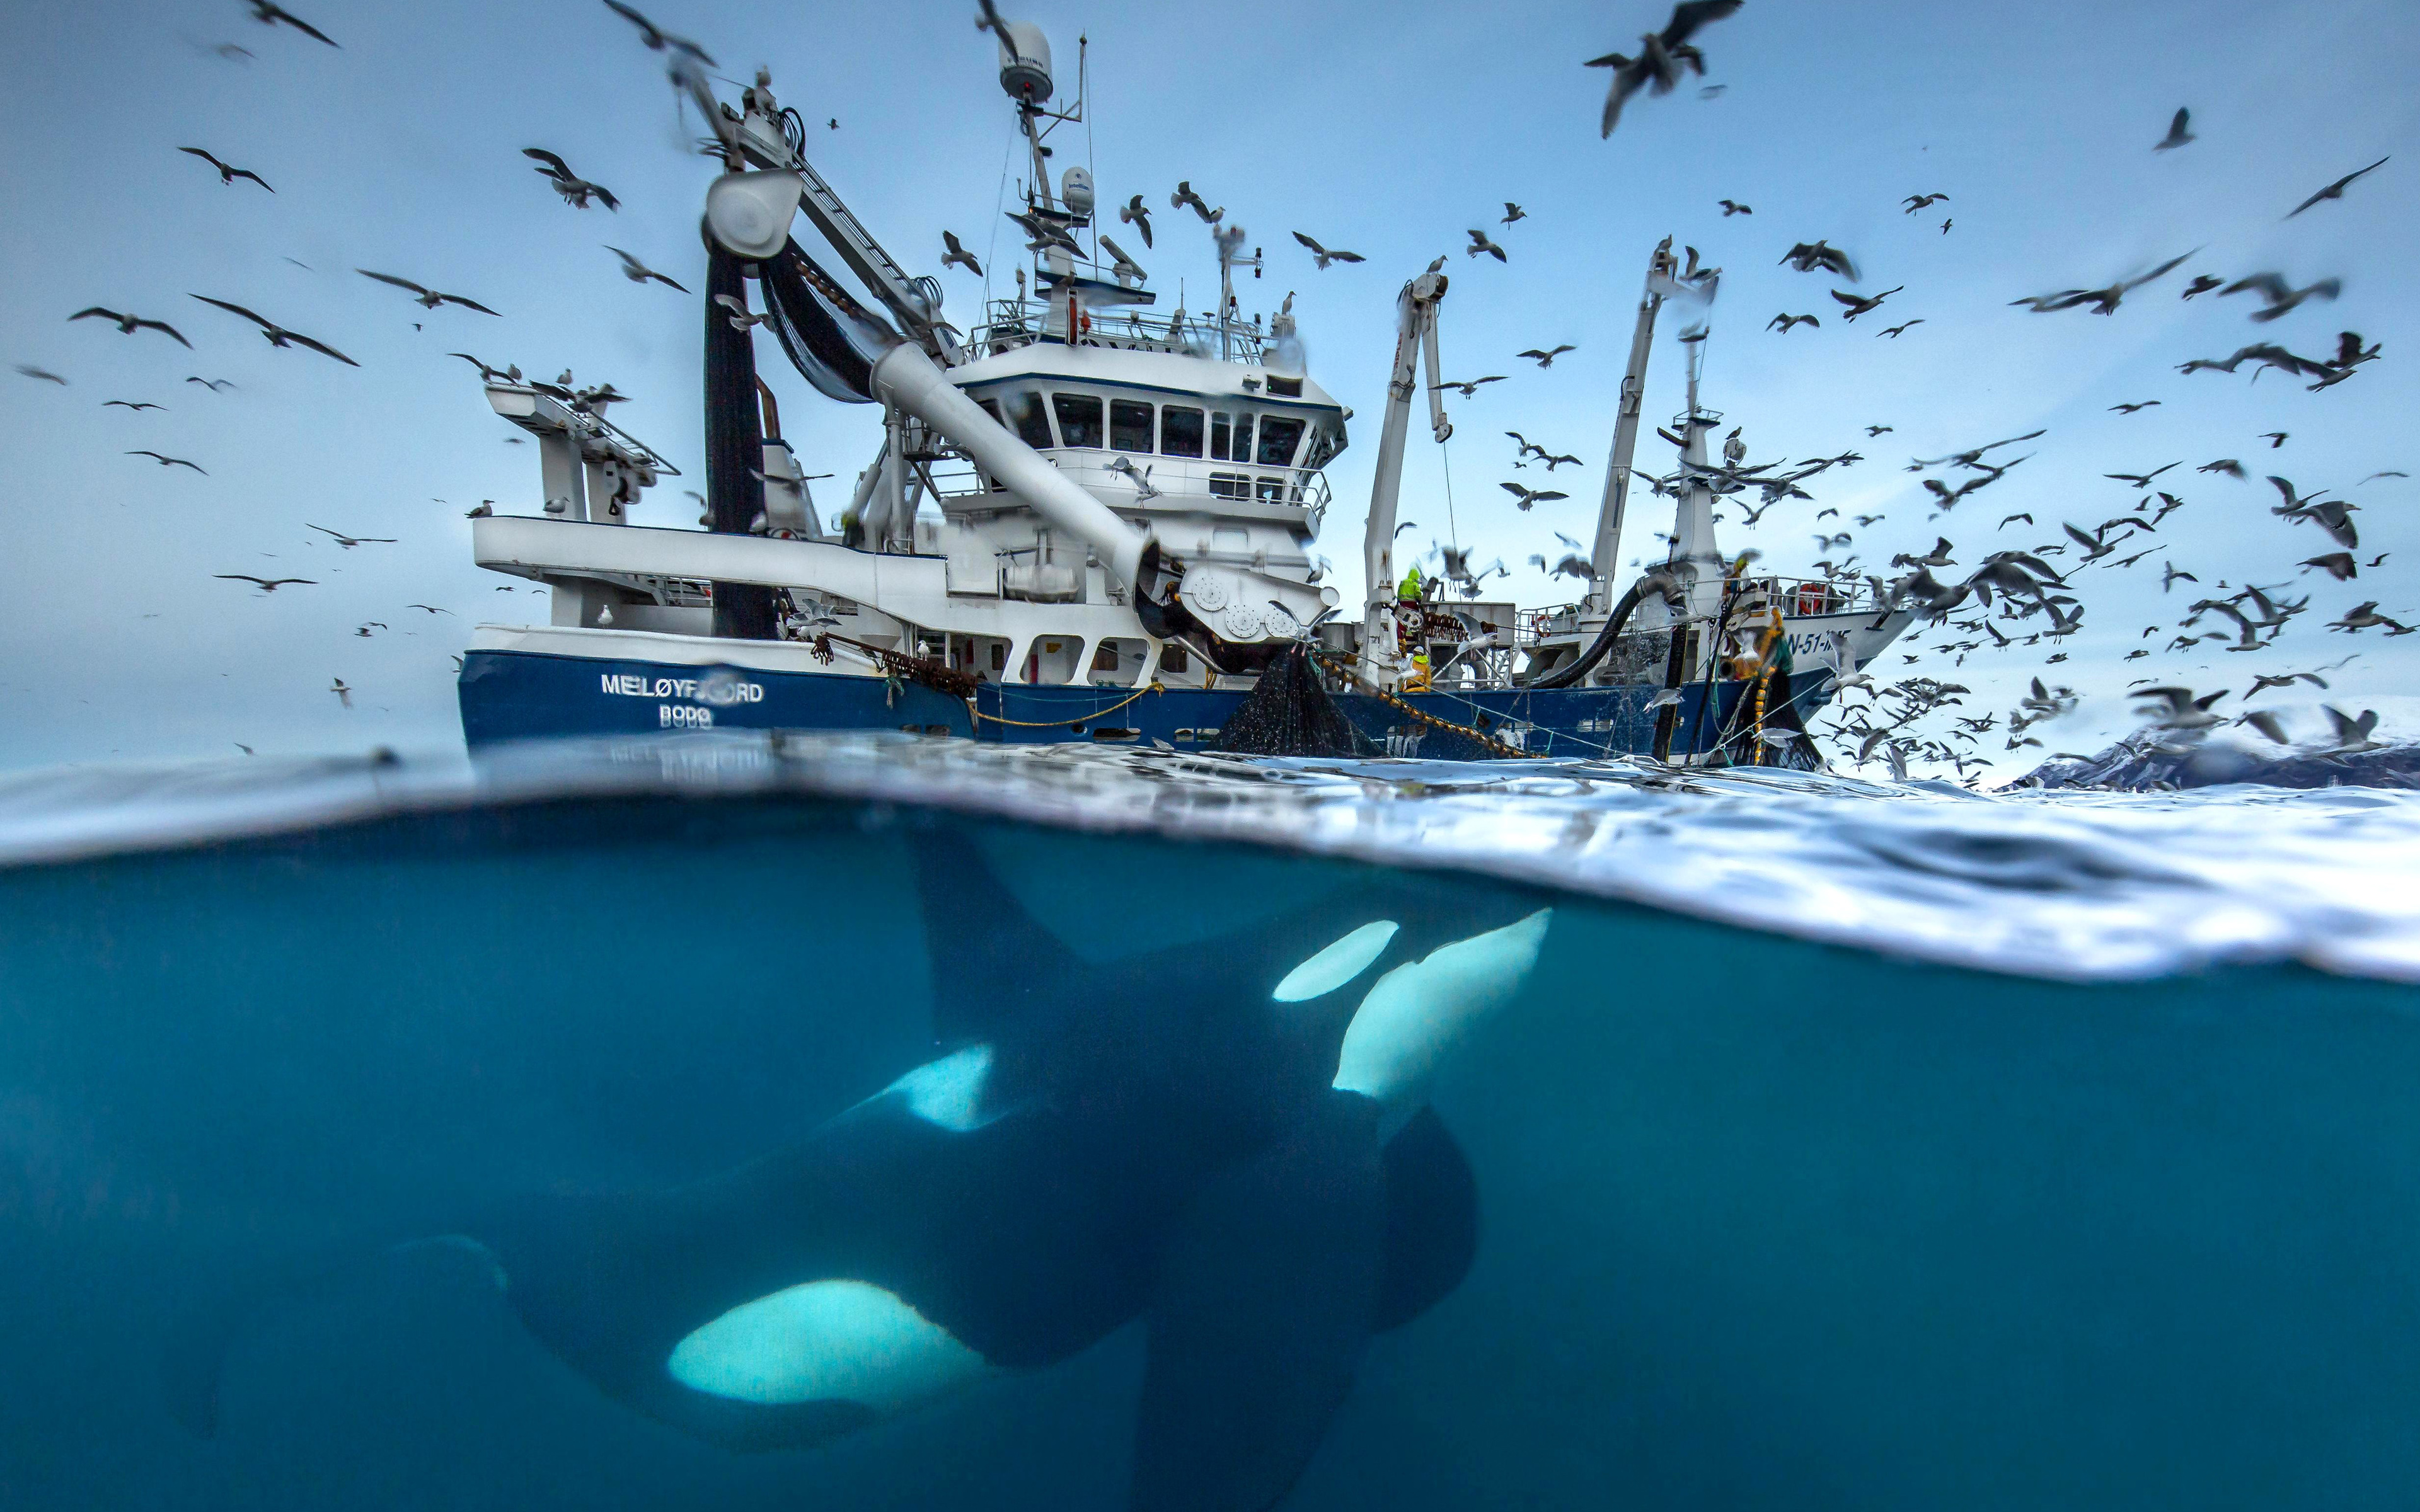 4k, Fishing Boat, Killer Whale, Sea, Underwater, Whale, - Siena International Photo Awards Winner - HD Wallpaper 